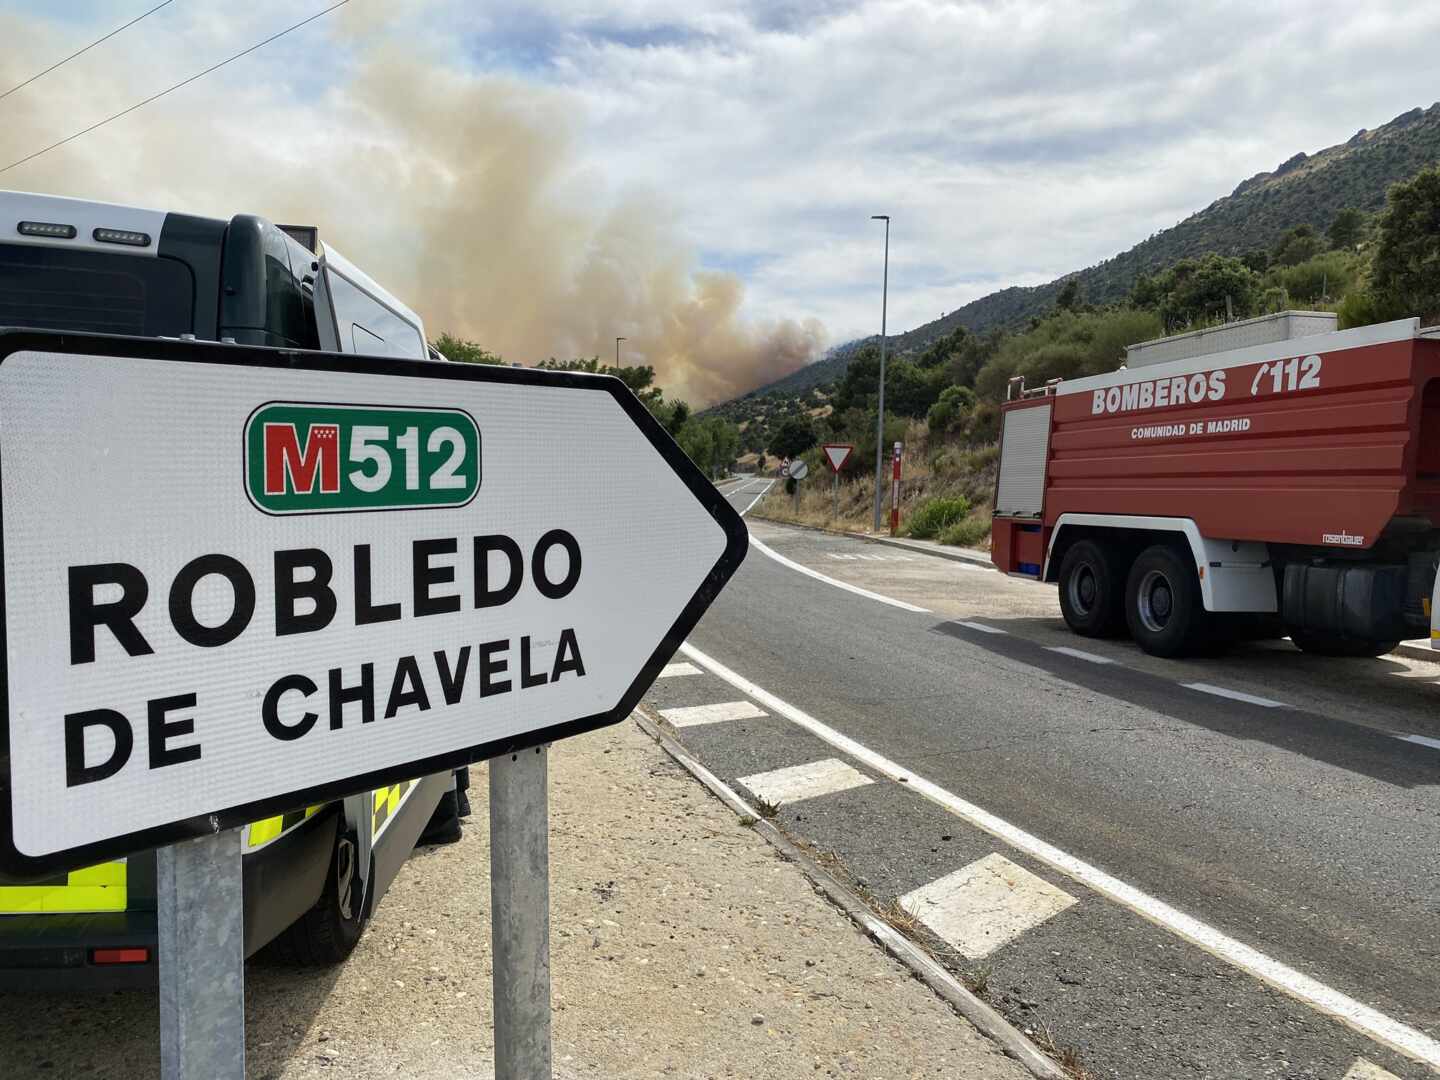 Madrid pide ayuda del Ejército por un incendio en Robledo de Chavela